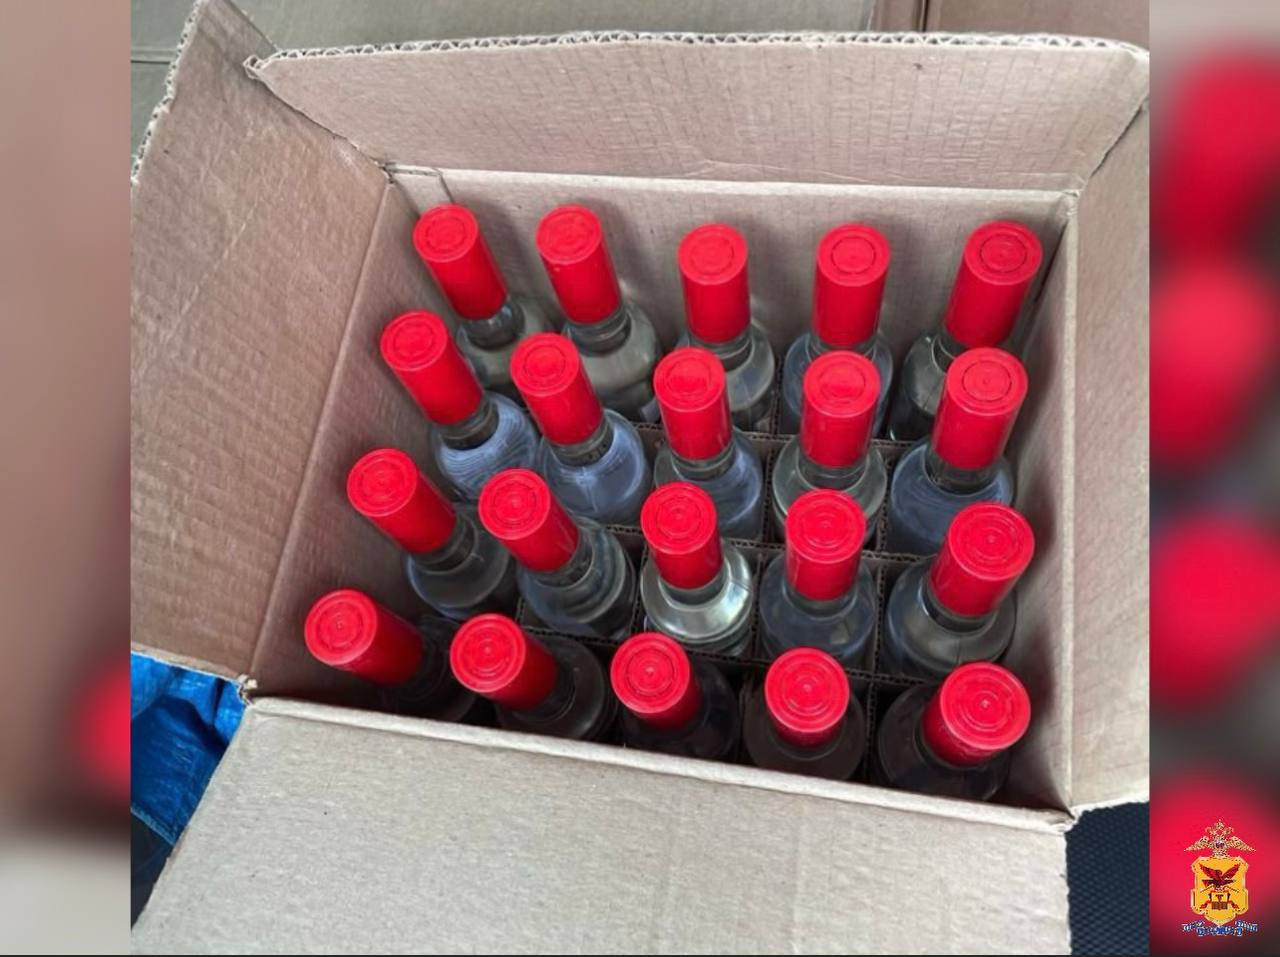 Более 400 бутылок нелегальной водки изъяли полицейские у жителя Читы